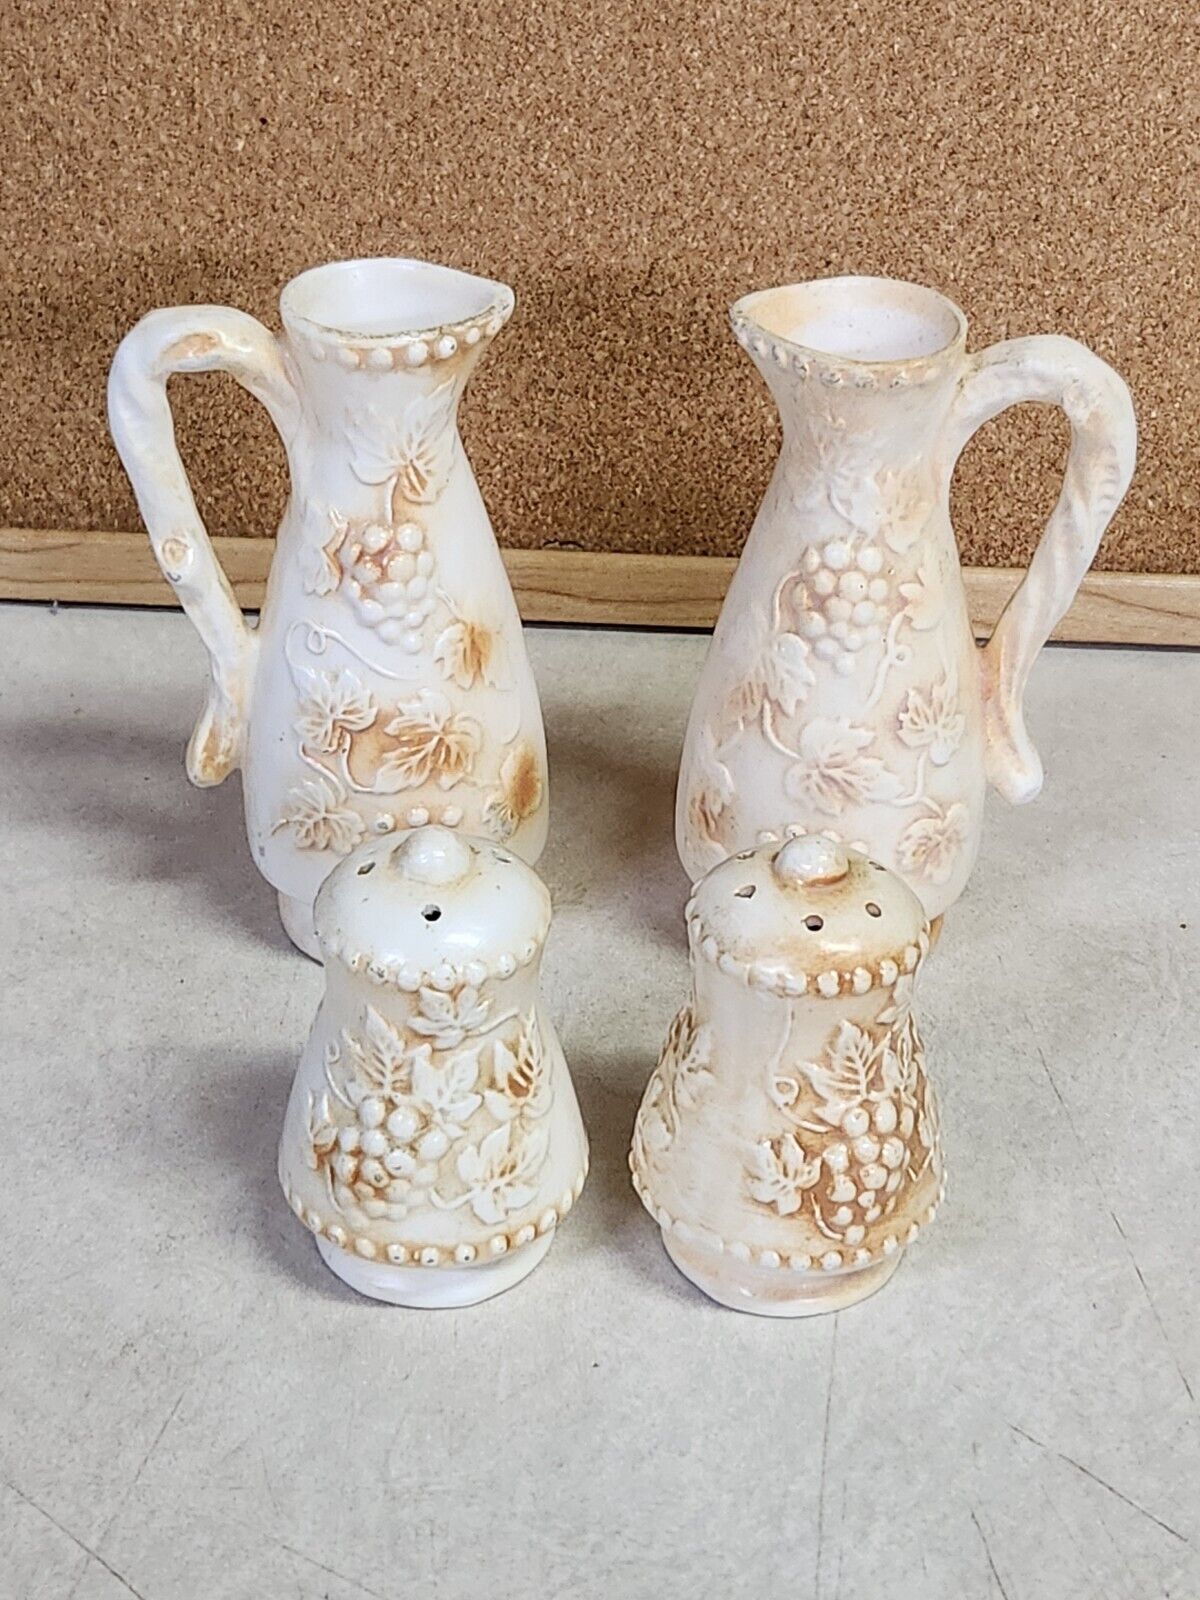 4 Pc Decorative Ceramics Grape Design - S&P Shakers, Oil/vinegar ?Lefton?